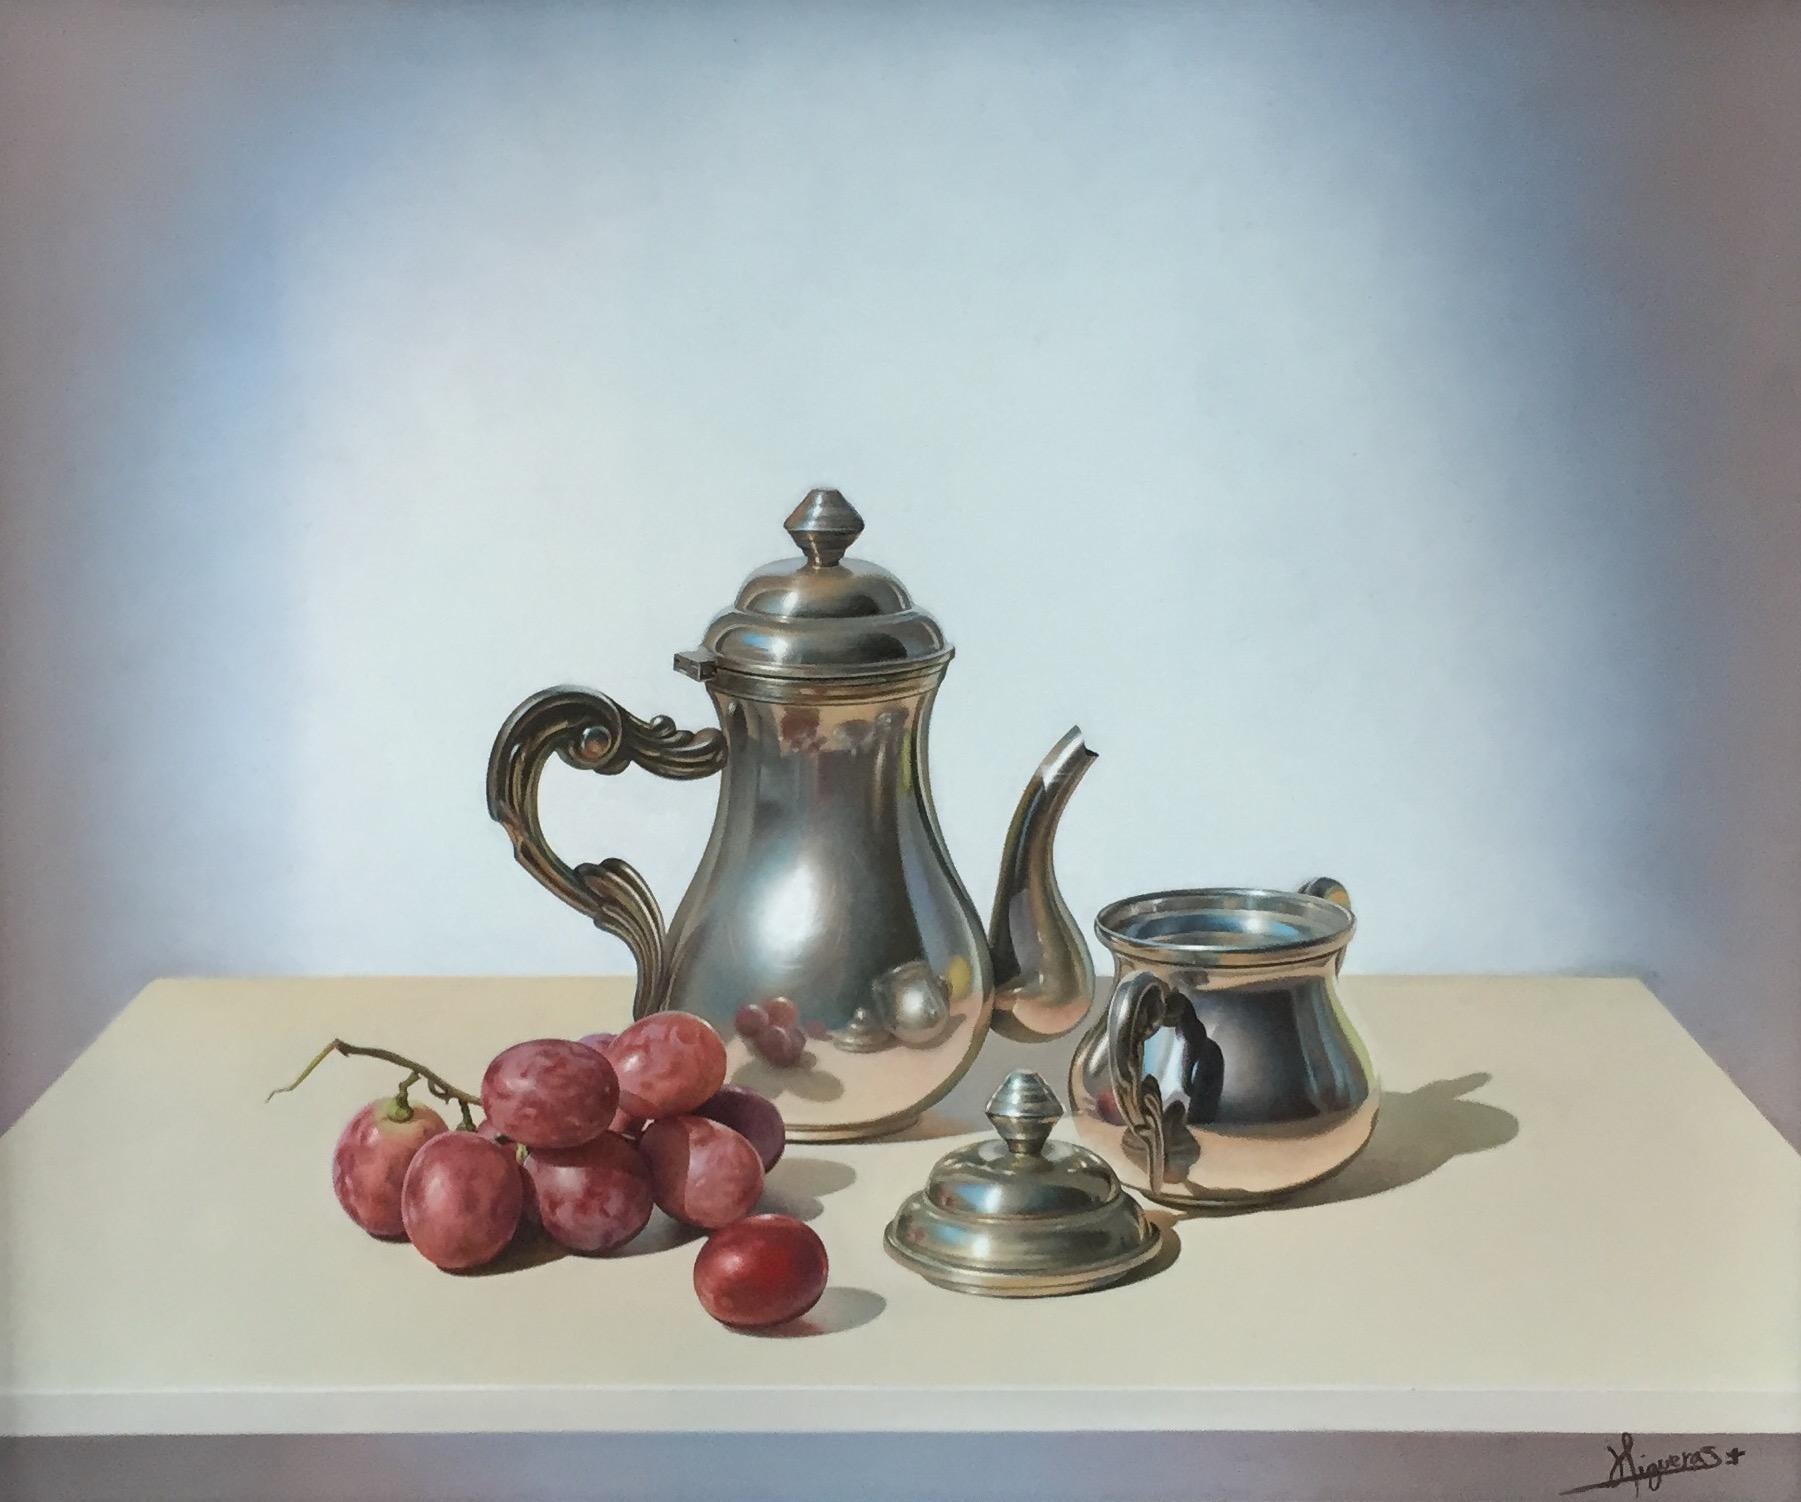 Peinture contemporaine « Nature morte avec raisins » en argenterie, cafetière et fruits - Painting de Manolo Higueras